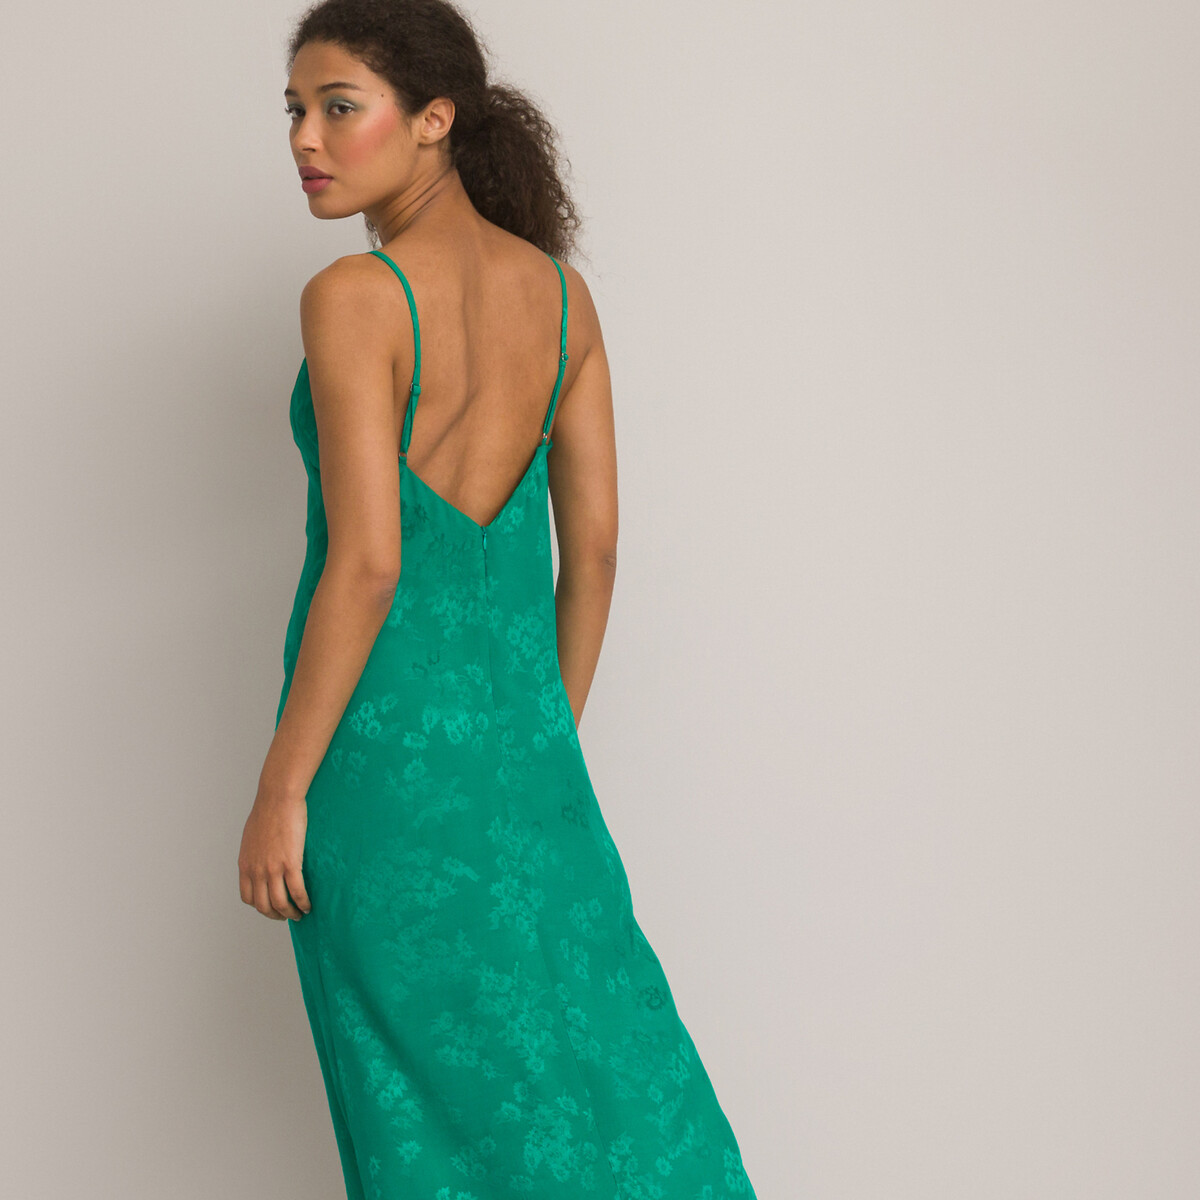 Платье Длинное в стиле нижнего белья тонкие бретели 54 зеленый LaRedoute, размер 54 - фото 4